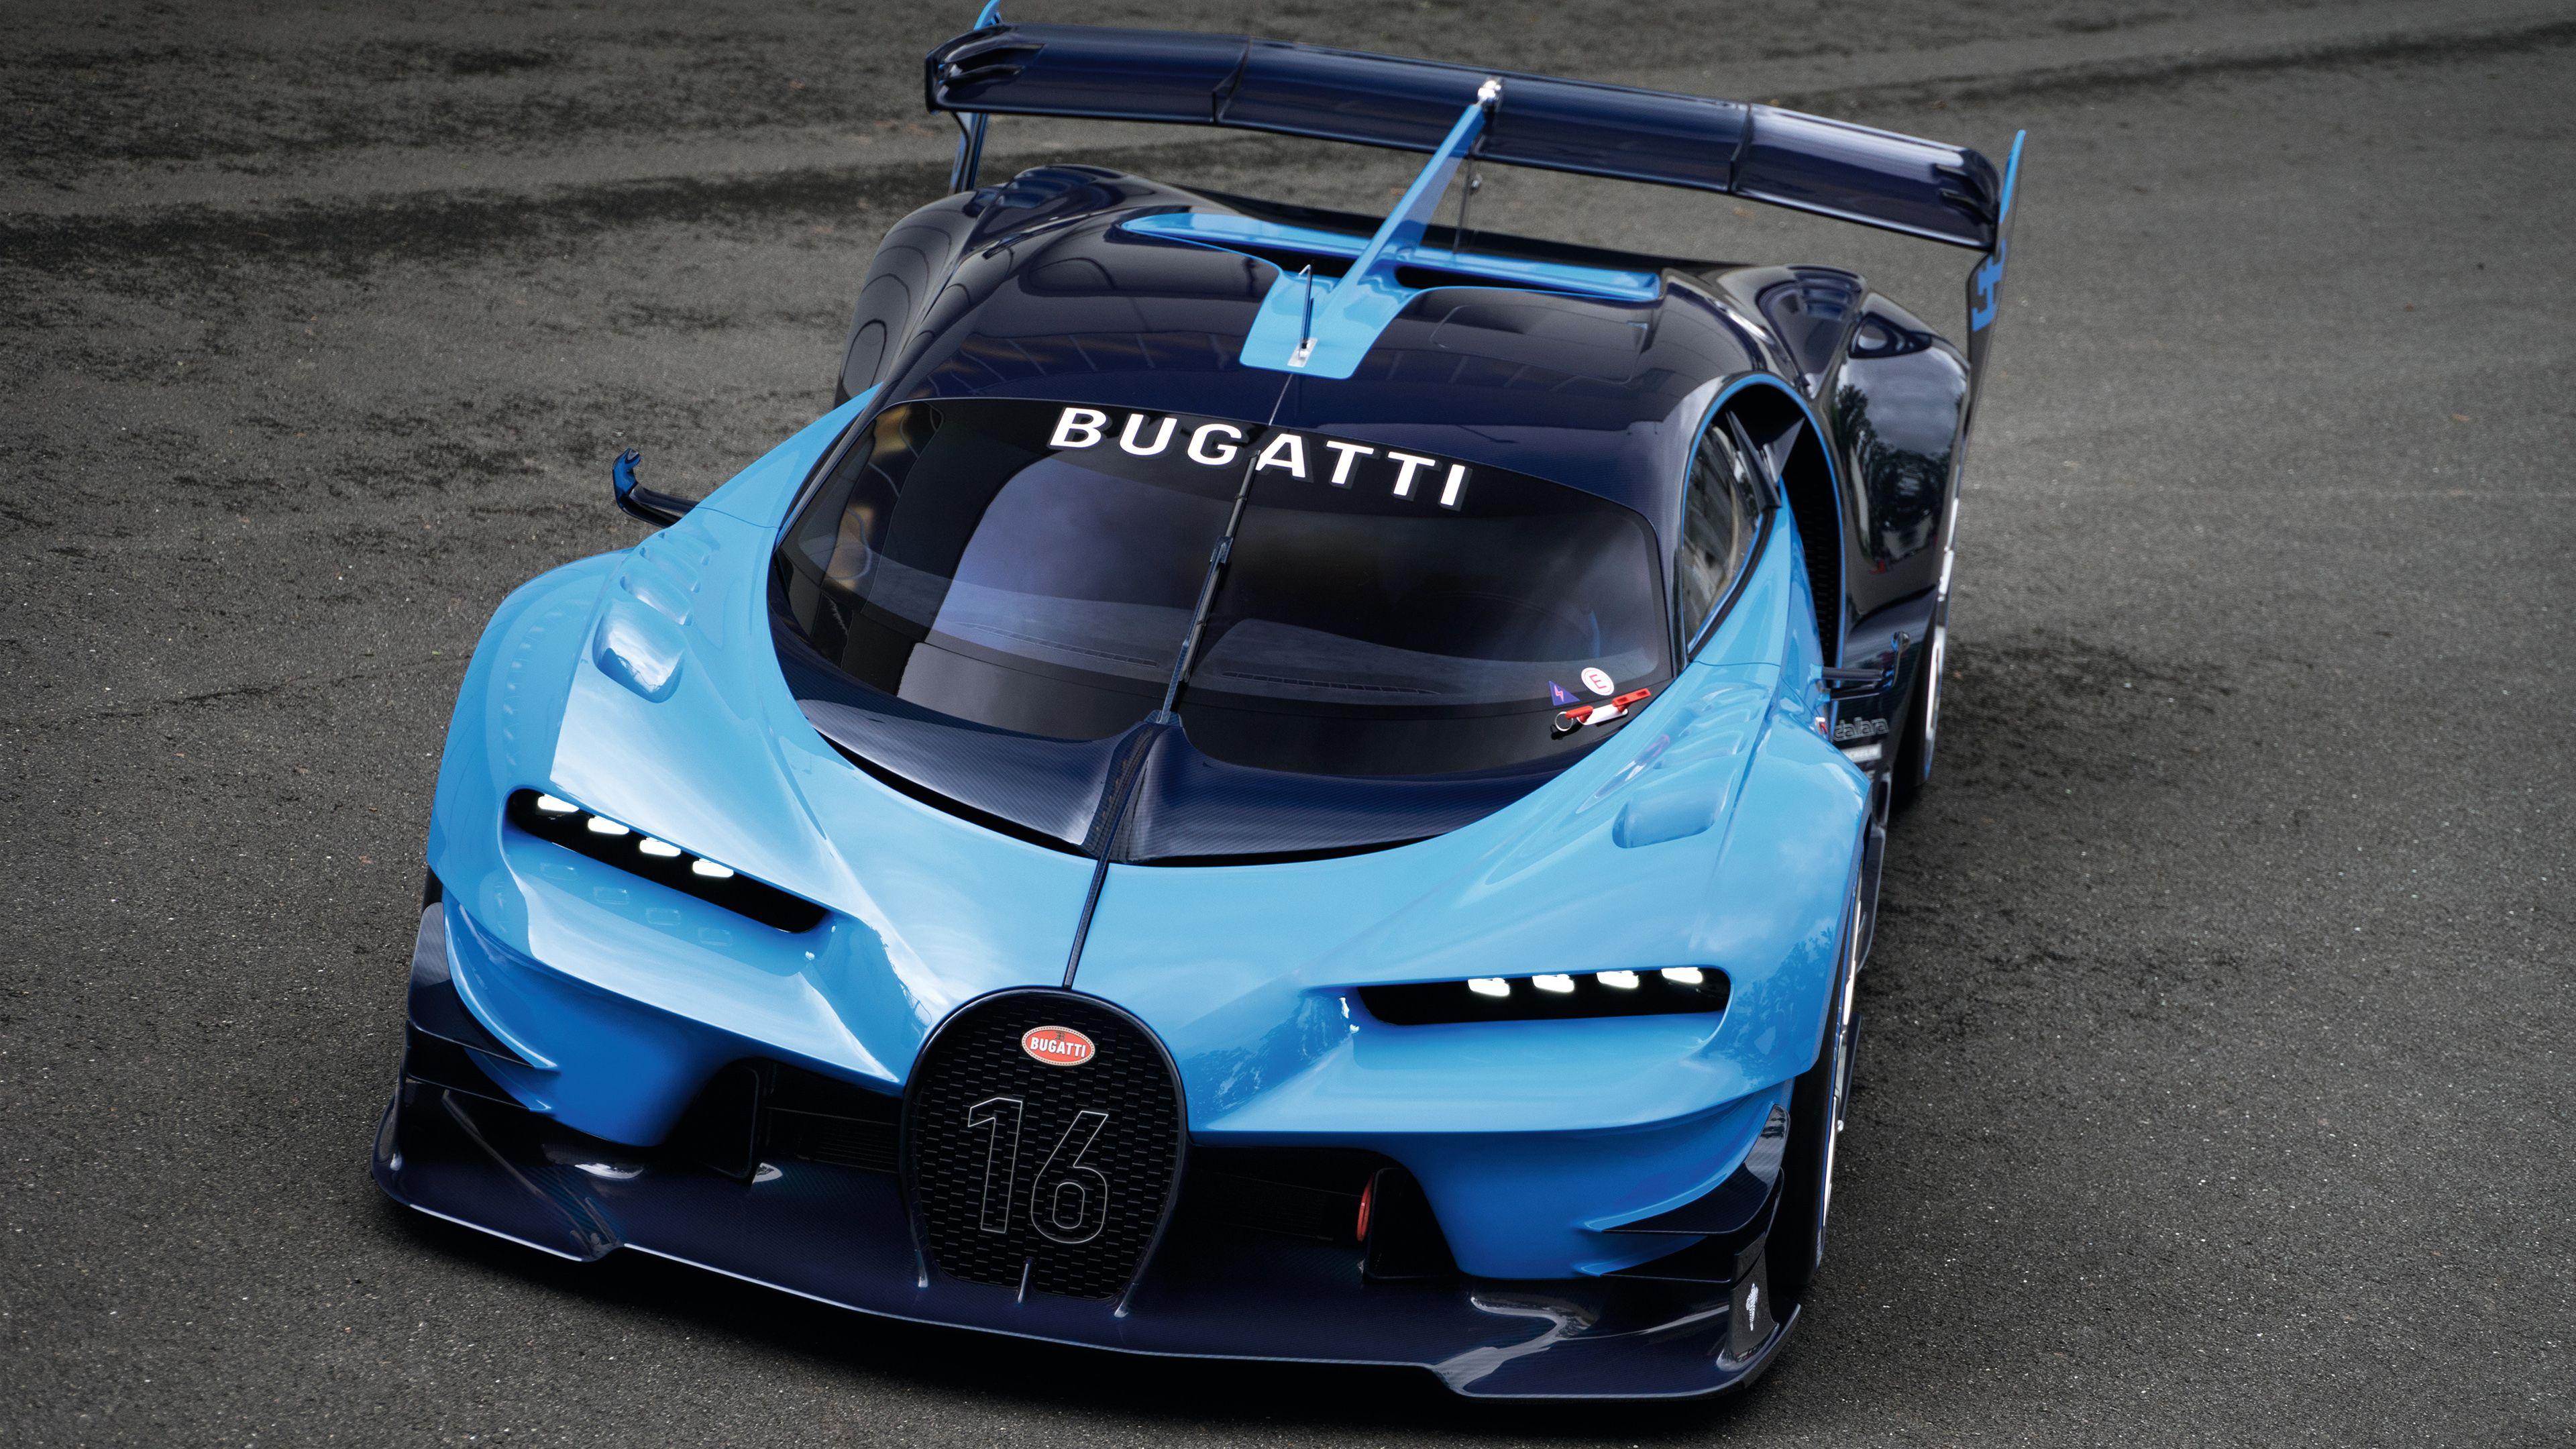 Bugatti Vision Wallpapers - Top Free Bugatti Vision Backgrounds ...